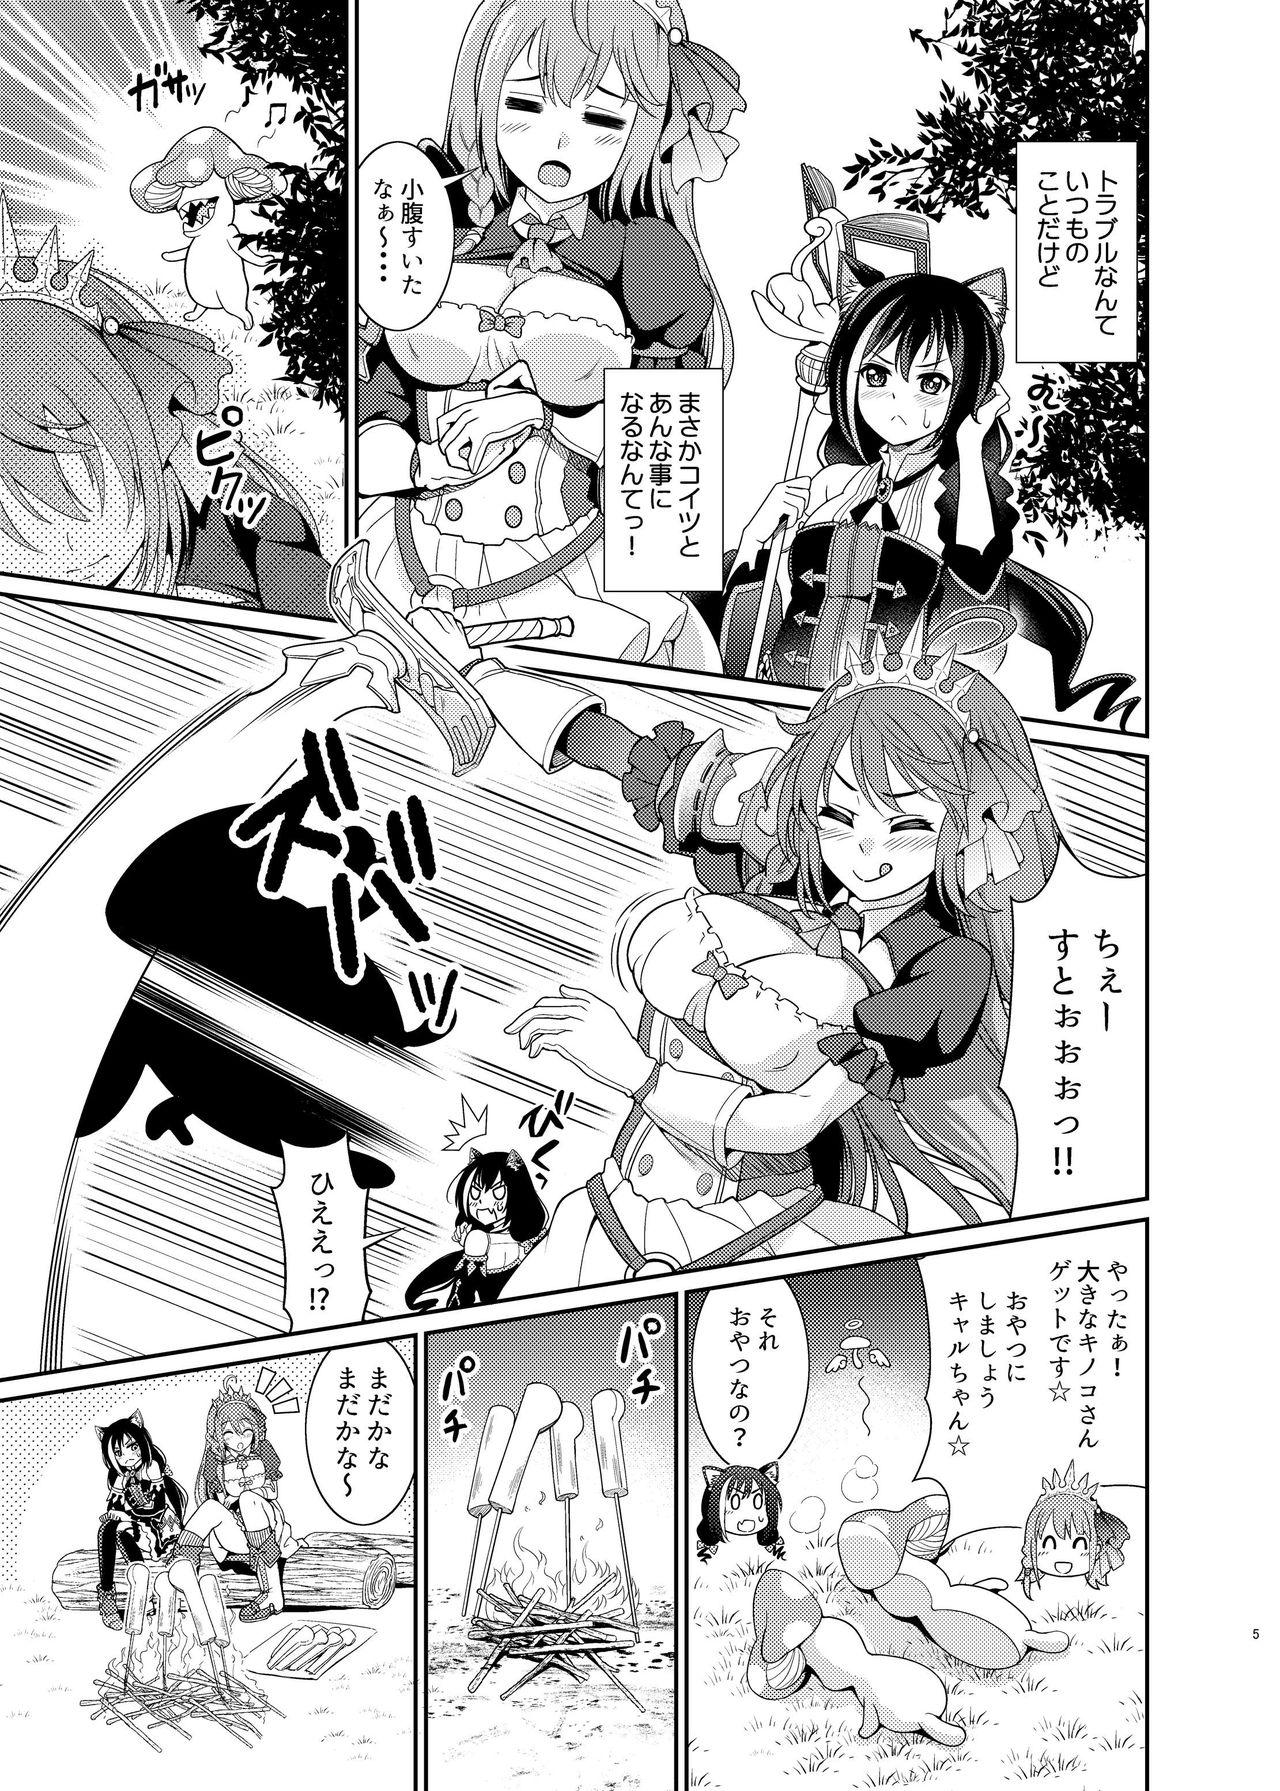 Teens Mamono Nante Tabaru Kara ... Ochinchin ga Hae chaunoyo!! - Princess connect Rough - Page 5